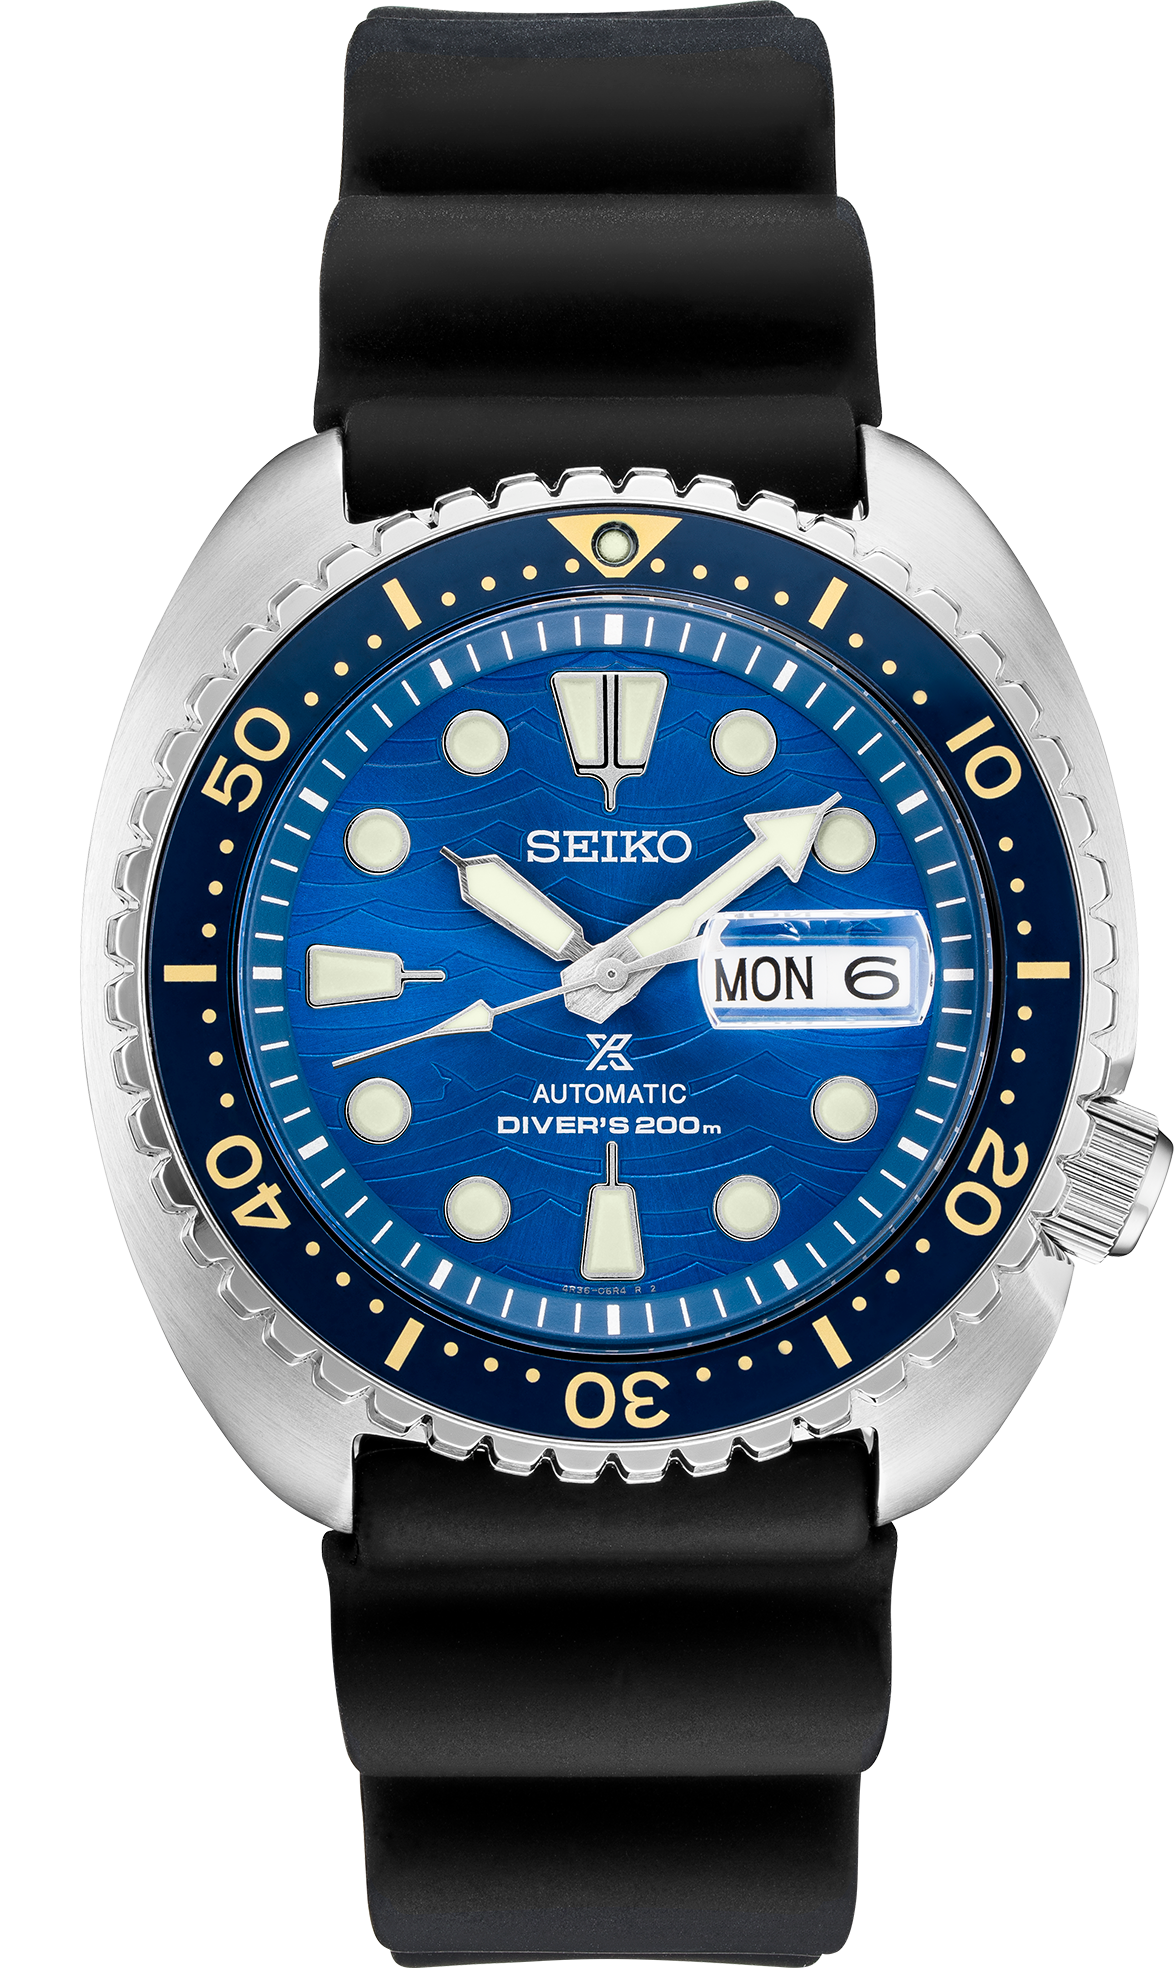 Seiko Prospex Automatic Silicone Male Watch